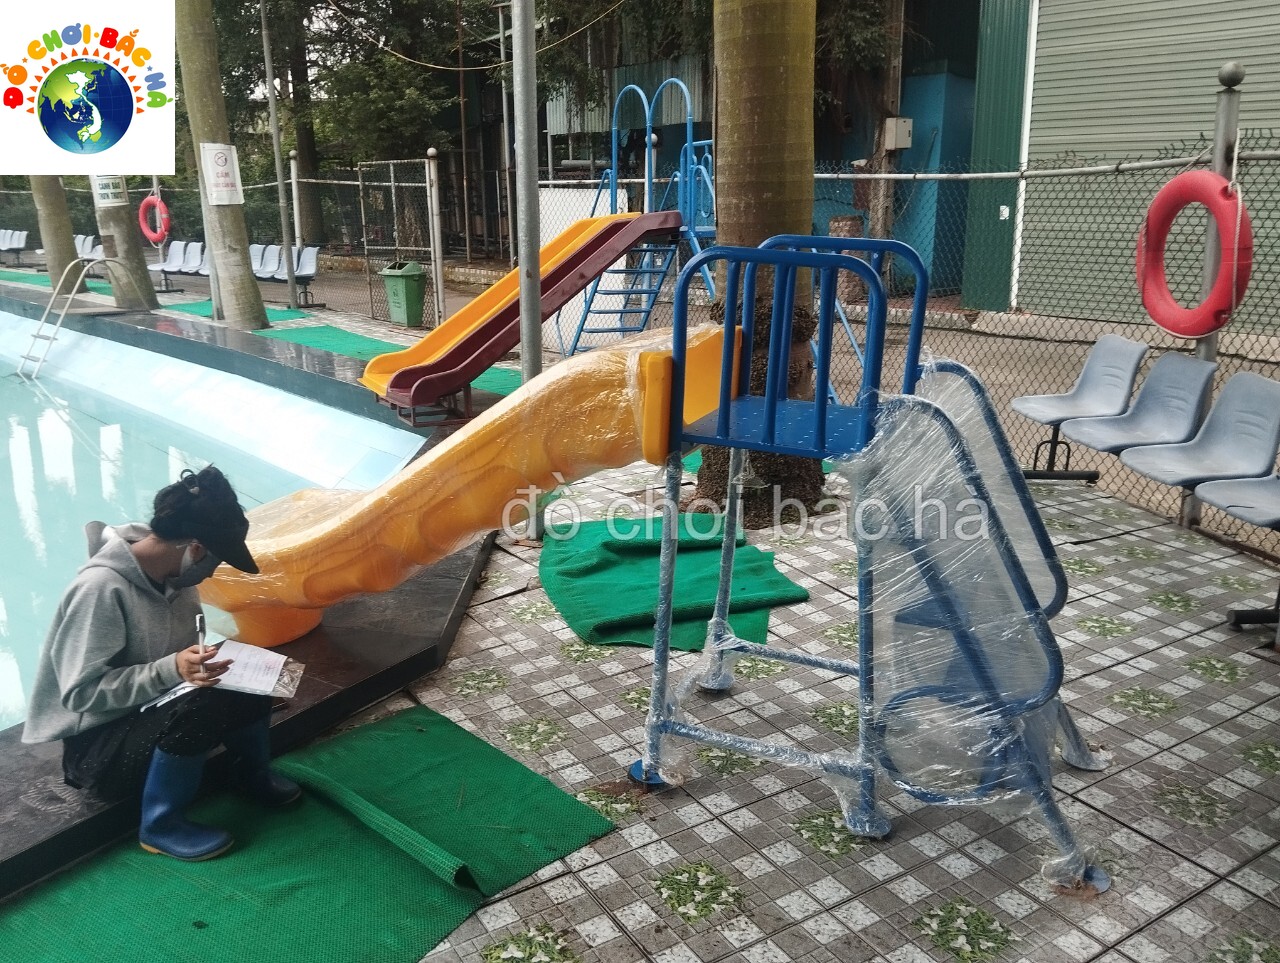 đồ chơi bắc hà lắp đặt bể bơi tại khu sinh thái minh thu- ninh hiệp- hà nội